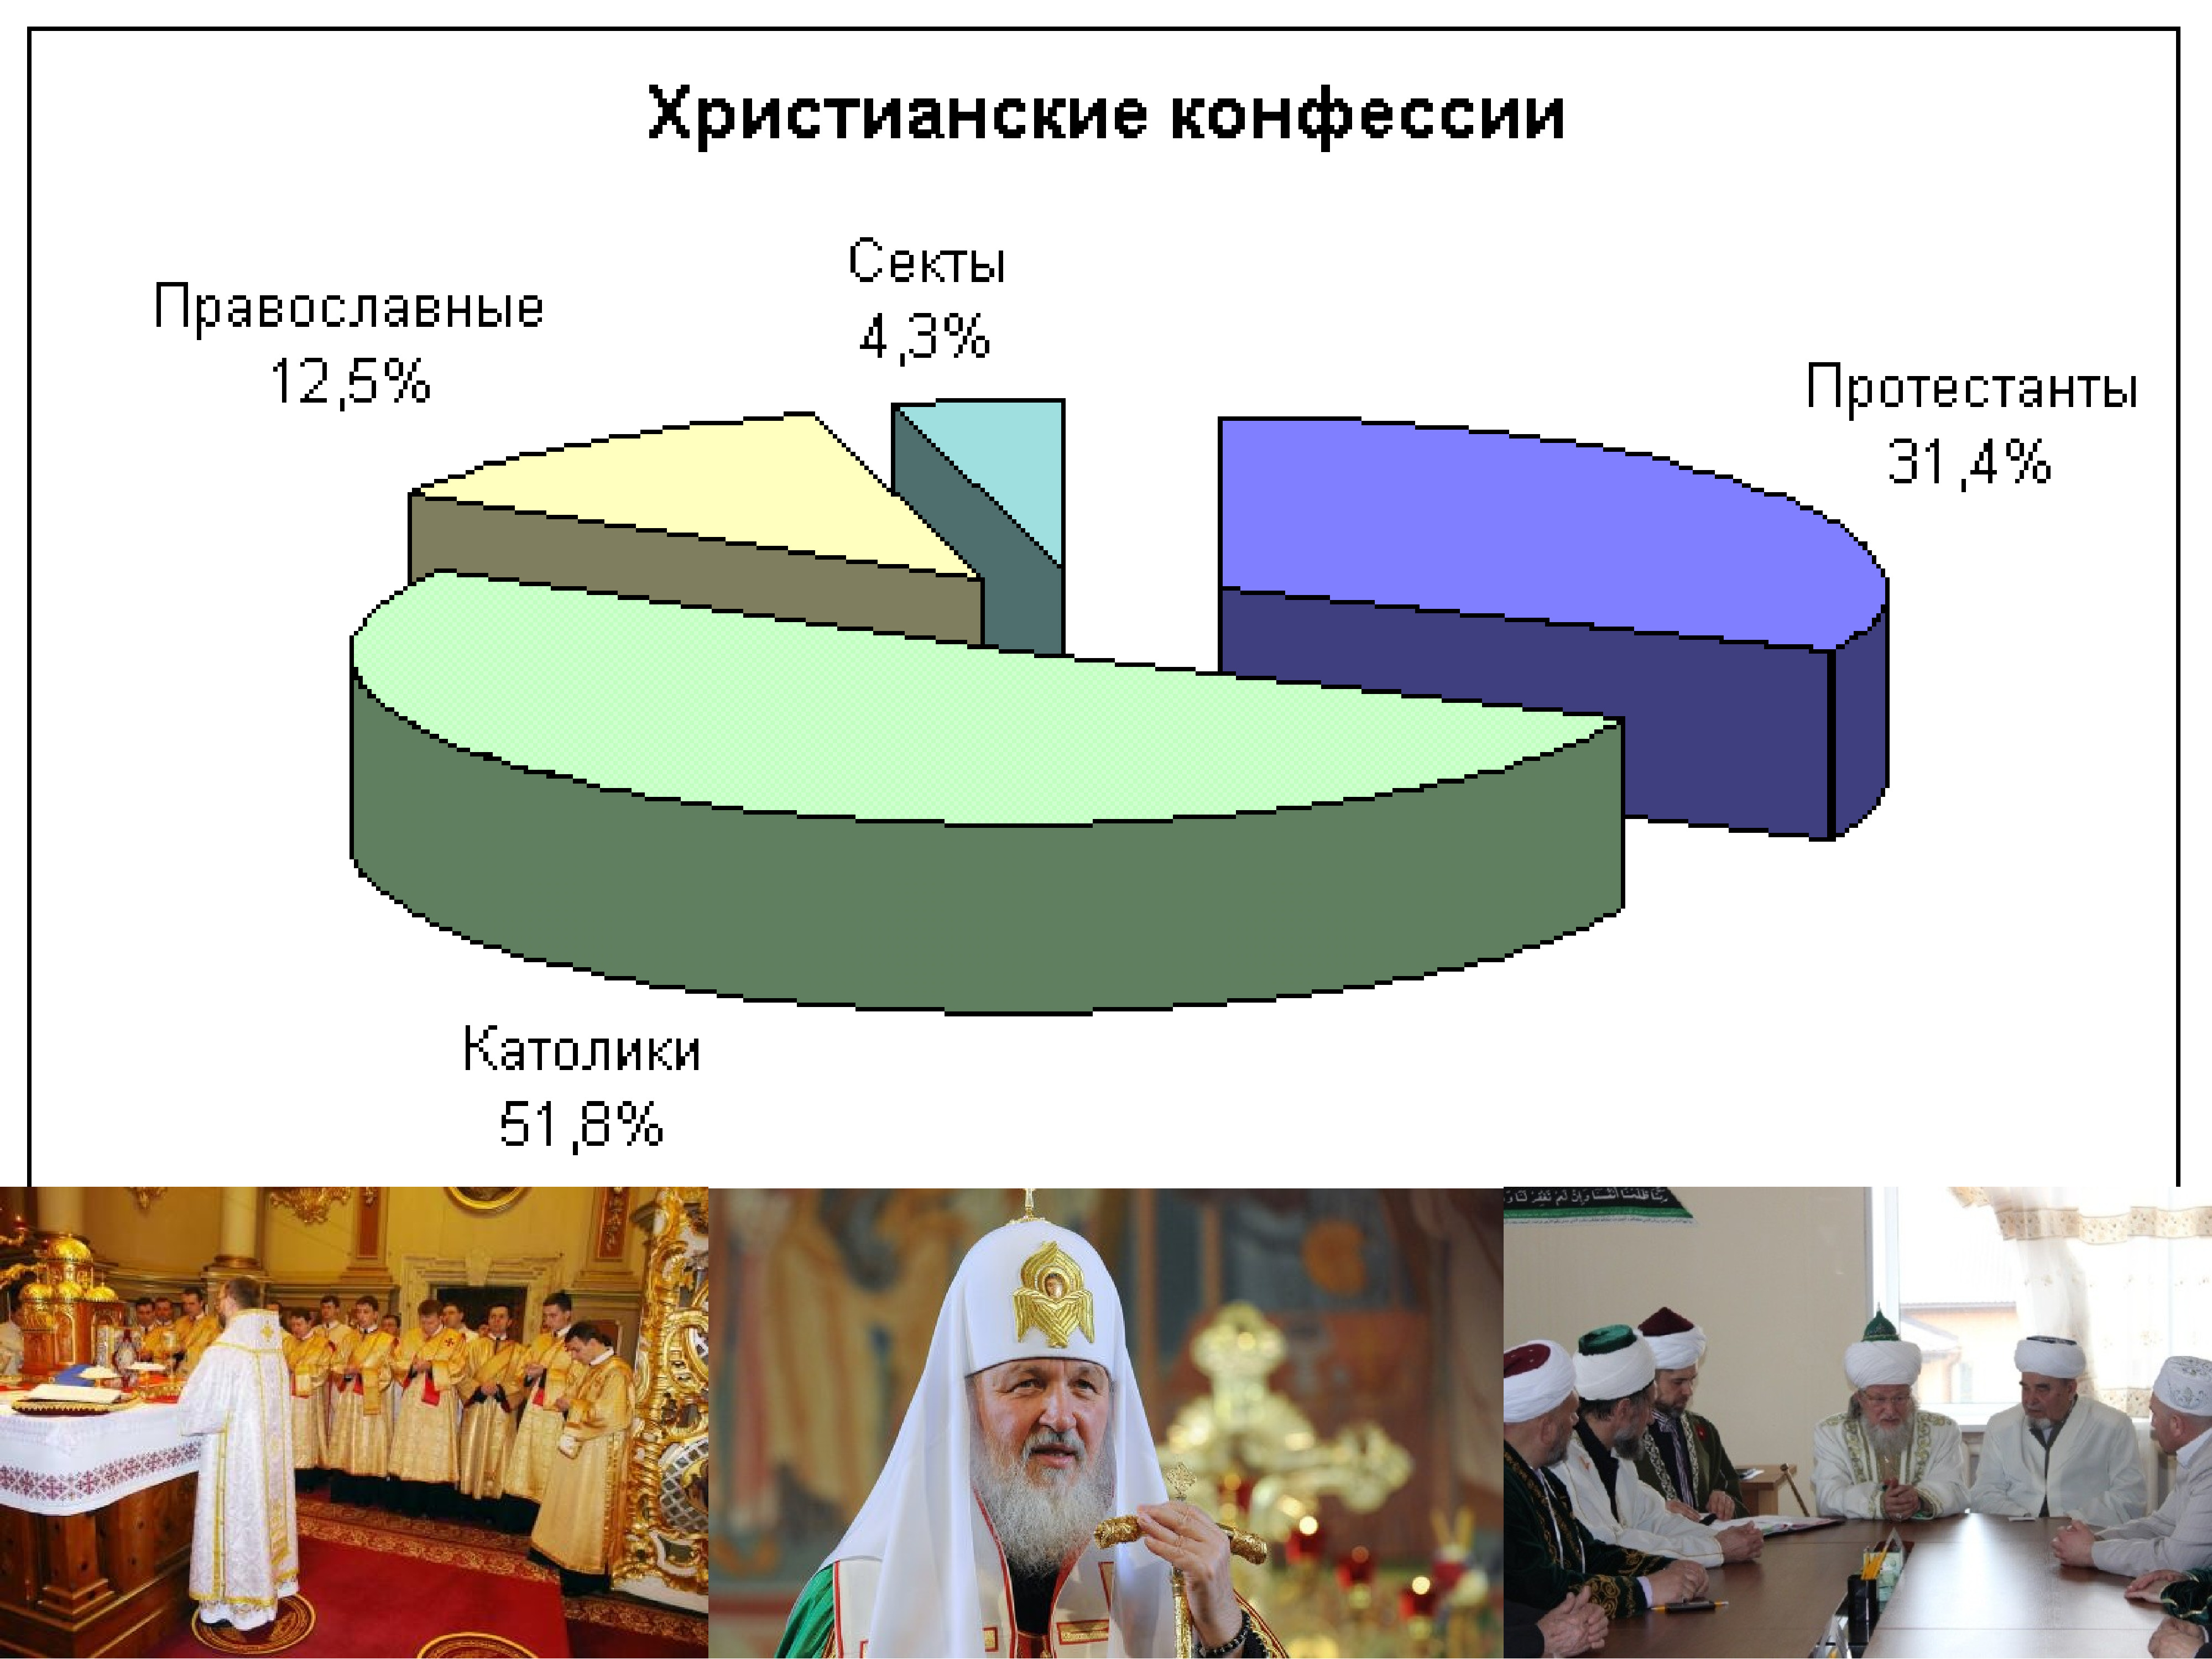 Православные сколько процентов. Религиозные конфессии. Религиозные конфессии в мире. Христианские конфессии Православие. Христианские конфессии в России.